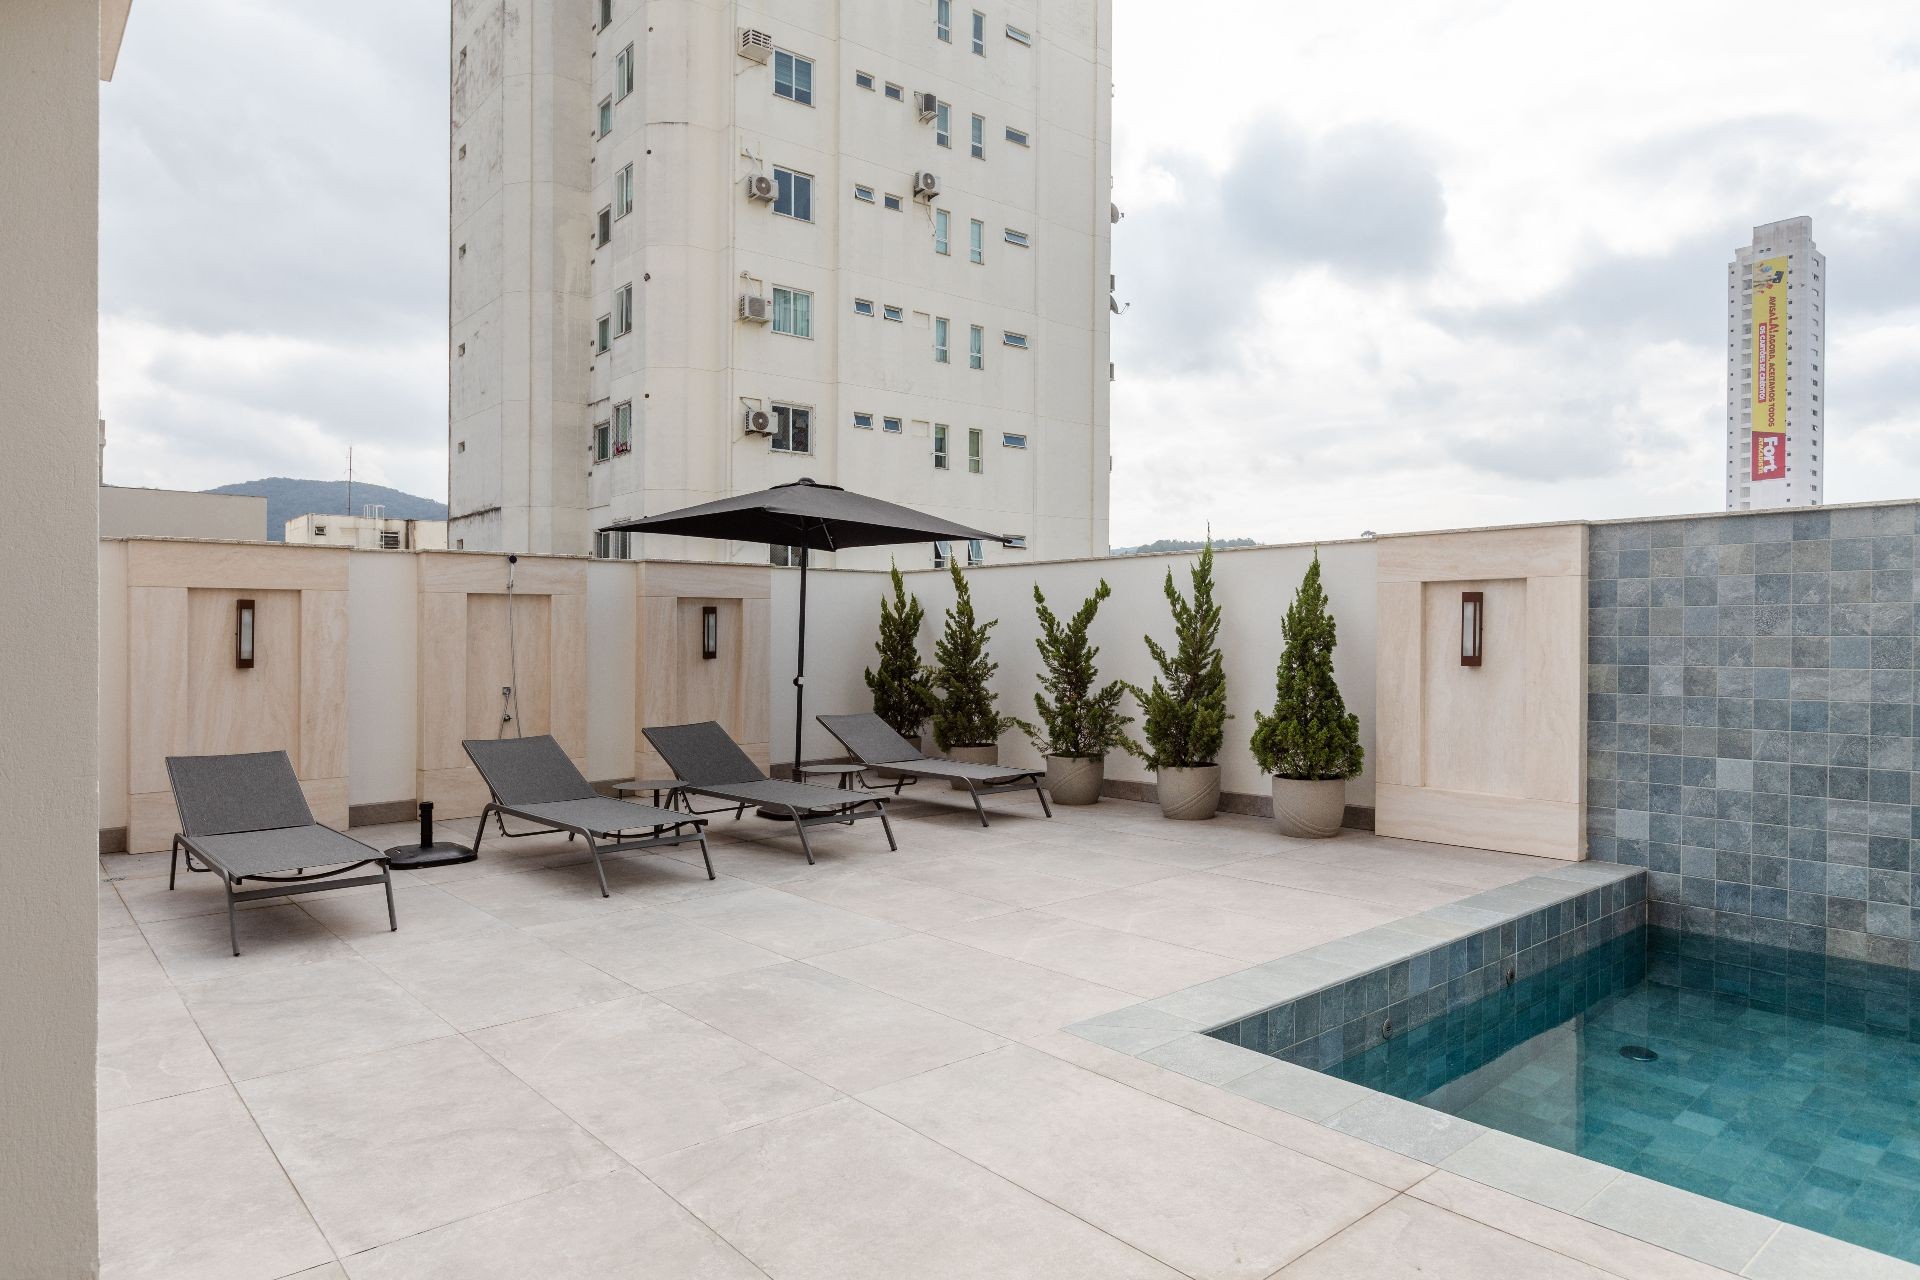 Apartamento Novo, Altíssimo Padrão Finamengte Mobiliado Decorado e Equipado com 3 Suítes Localizado no Coração de Balneário Camboriú -SC